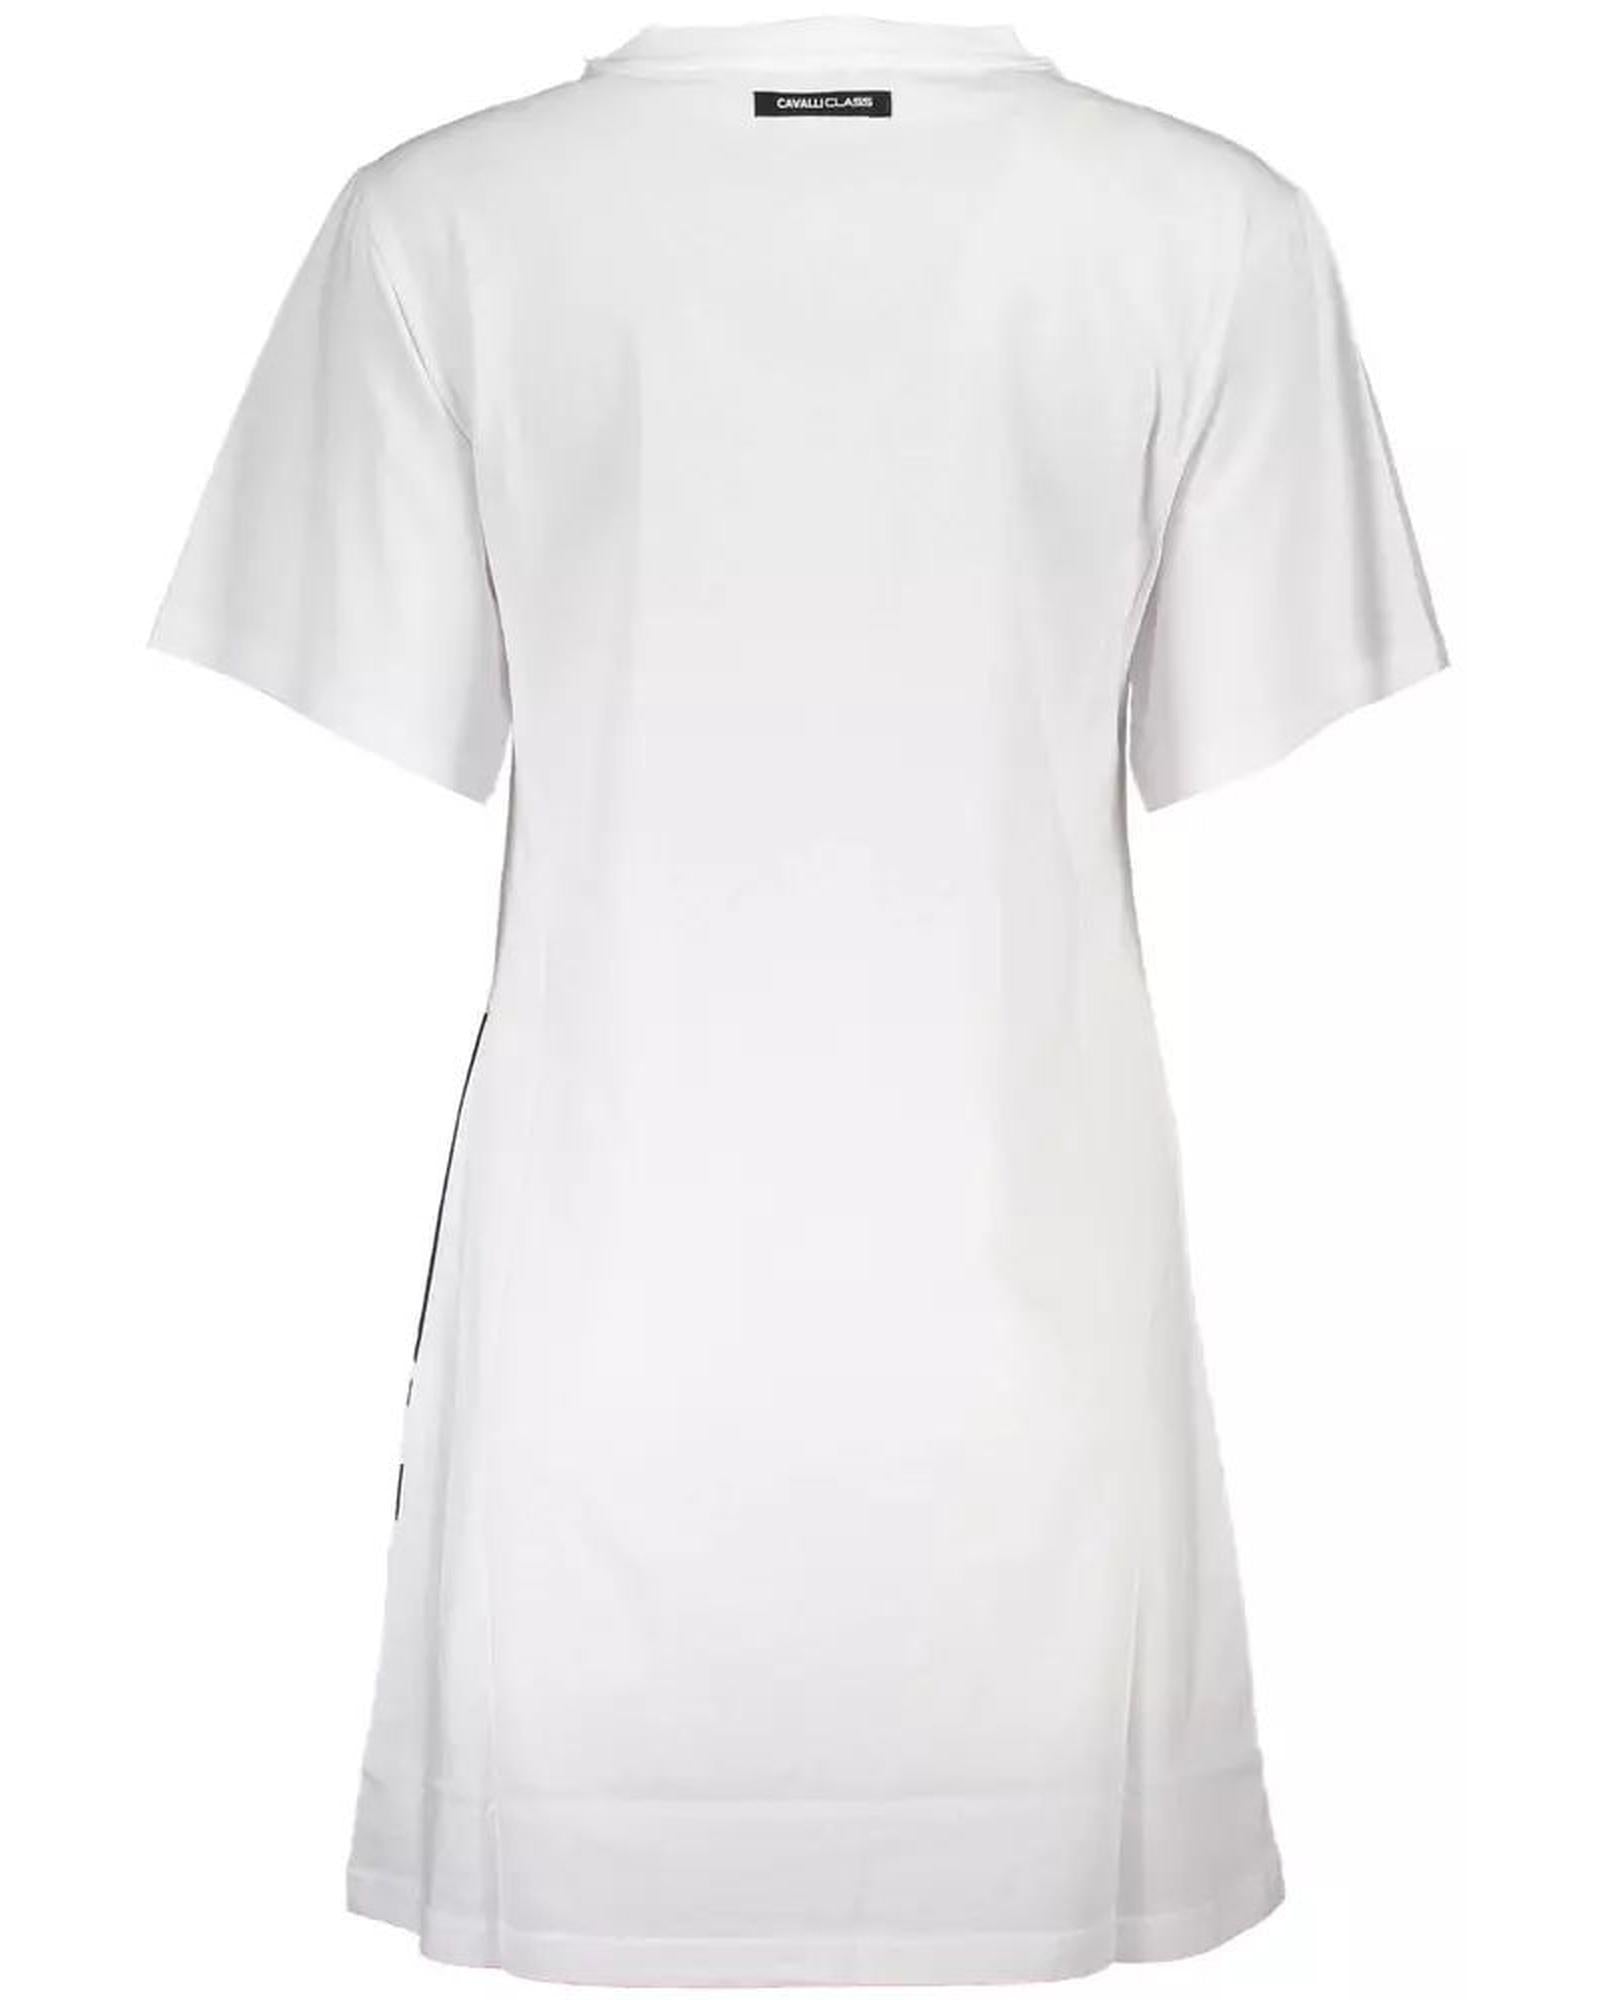 Women's White Cotton Dress - XS